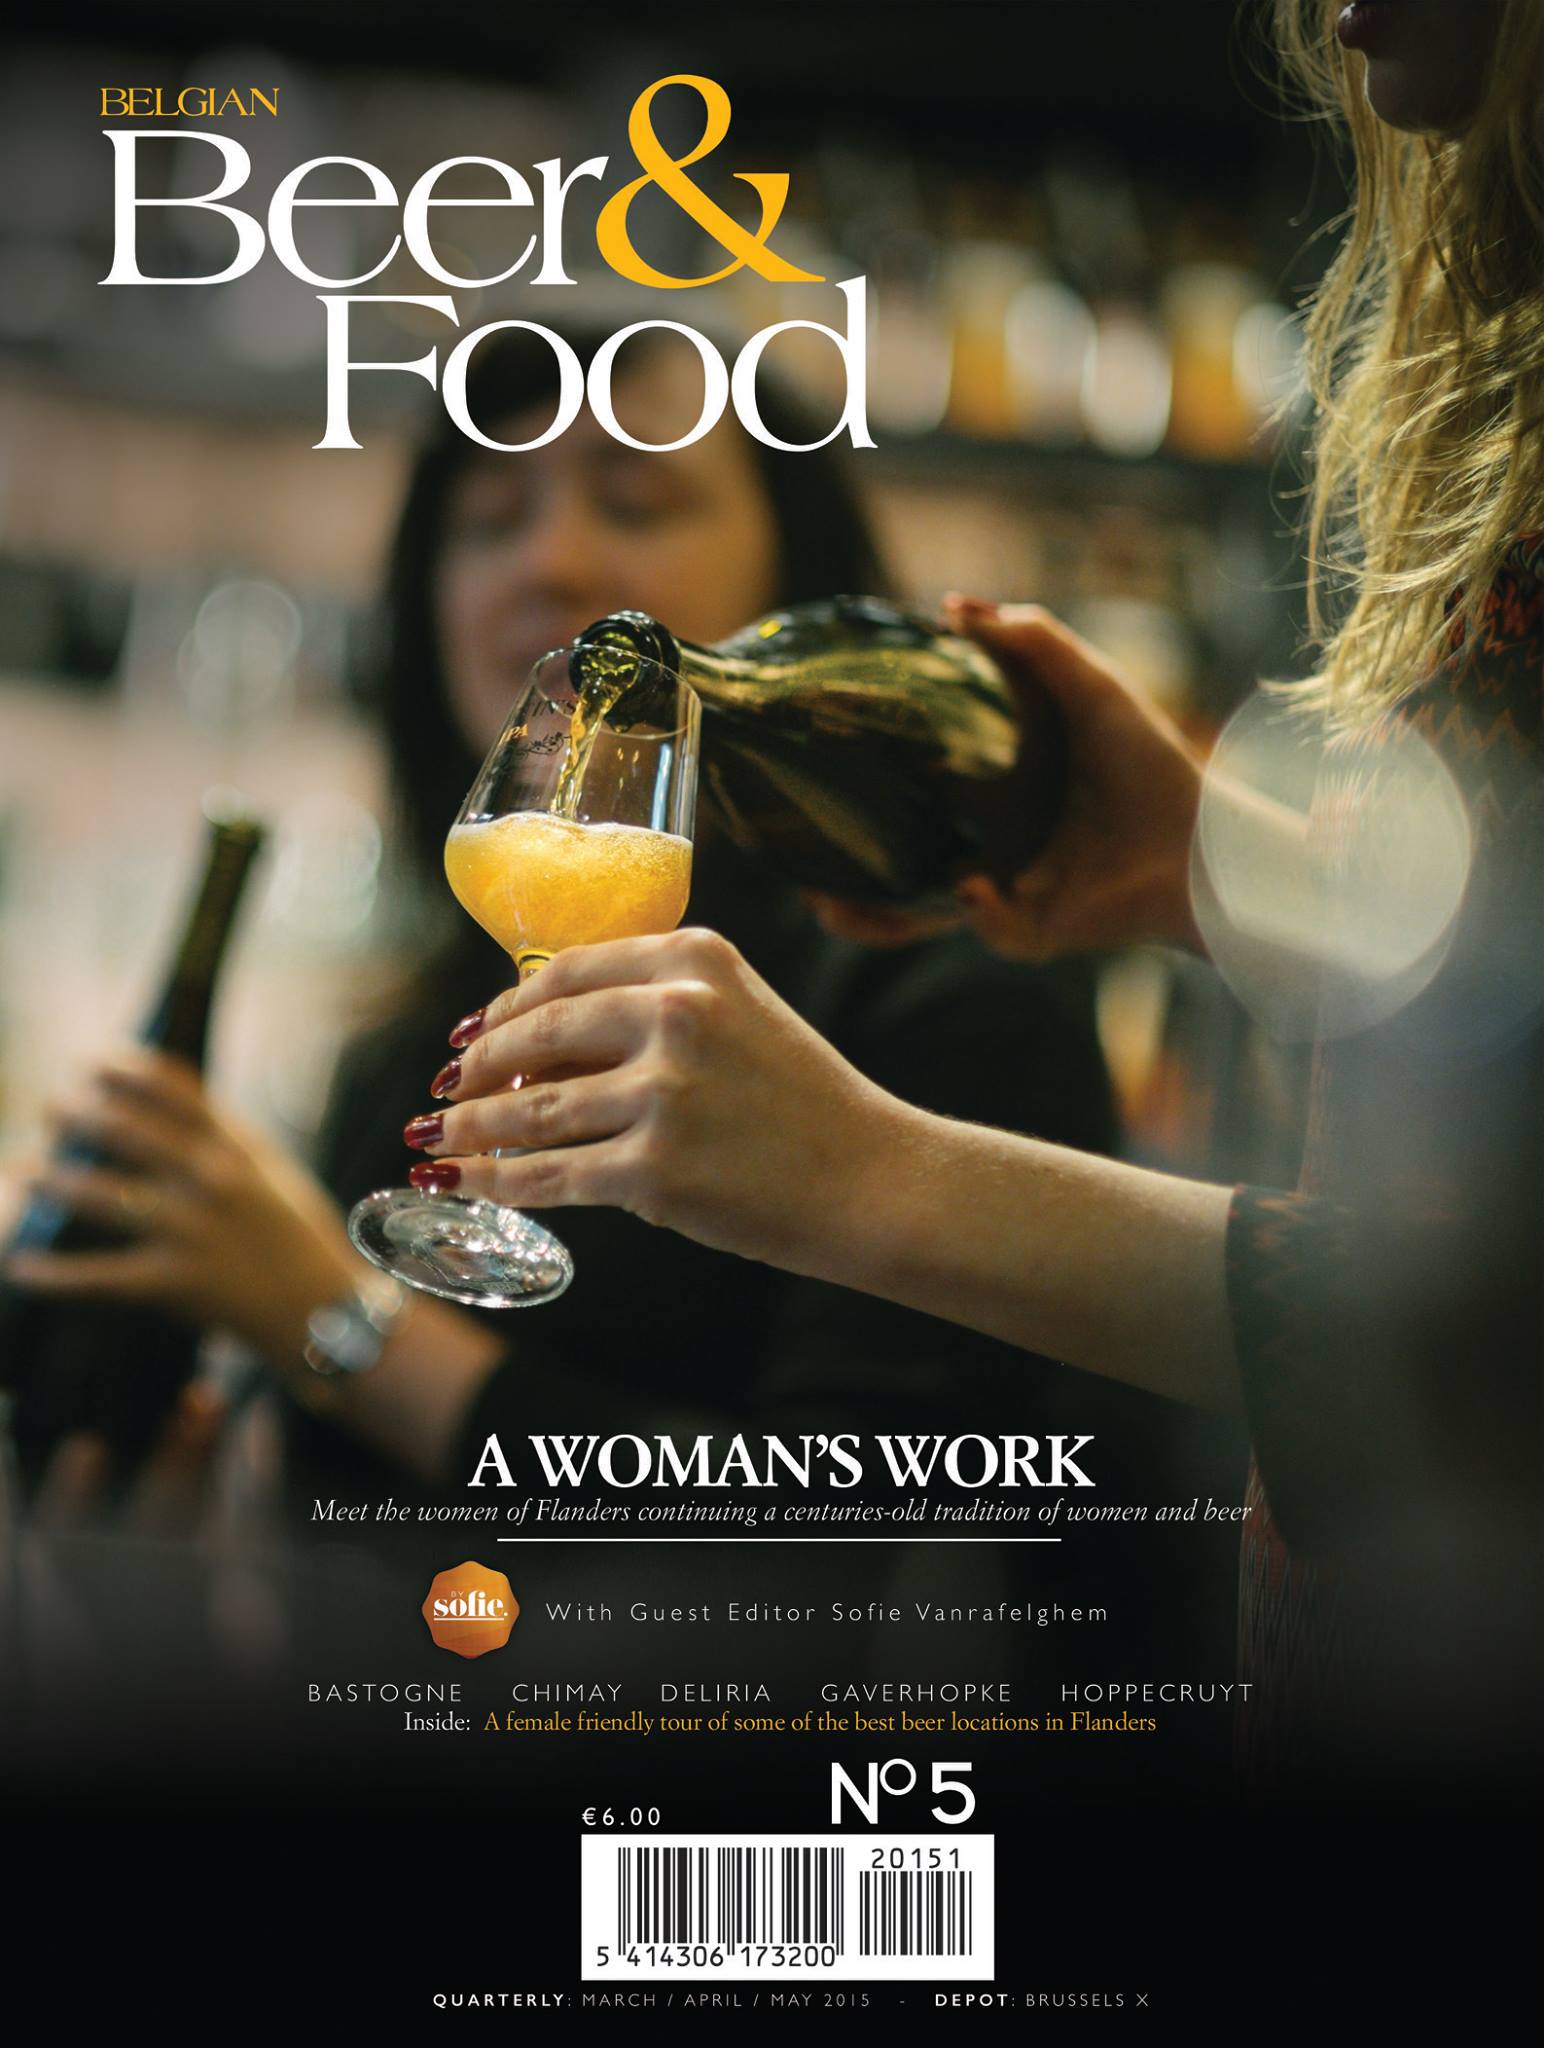 Belgian Beer & Food Magazine’s “Women and Beer” issue